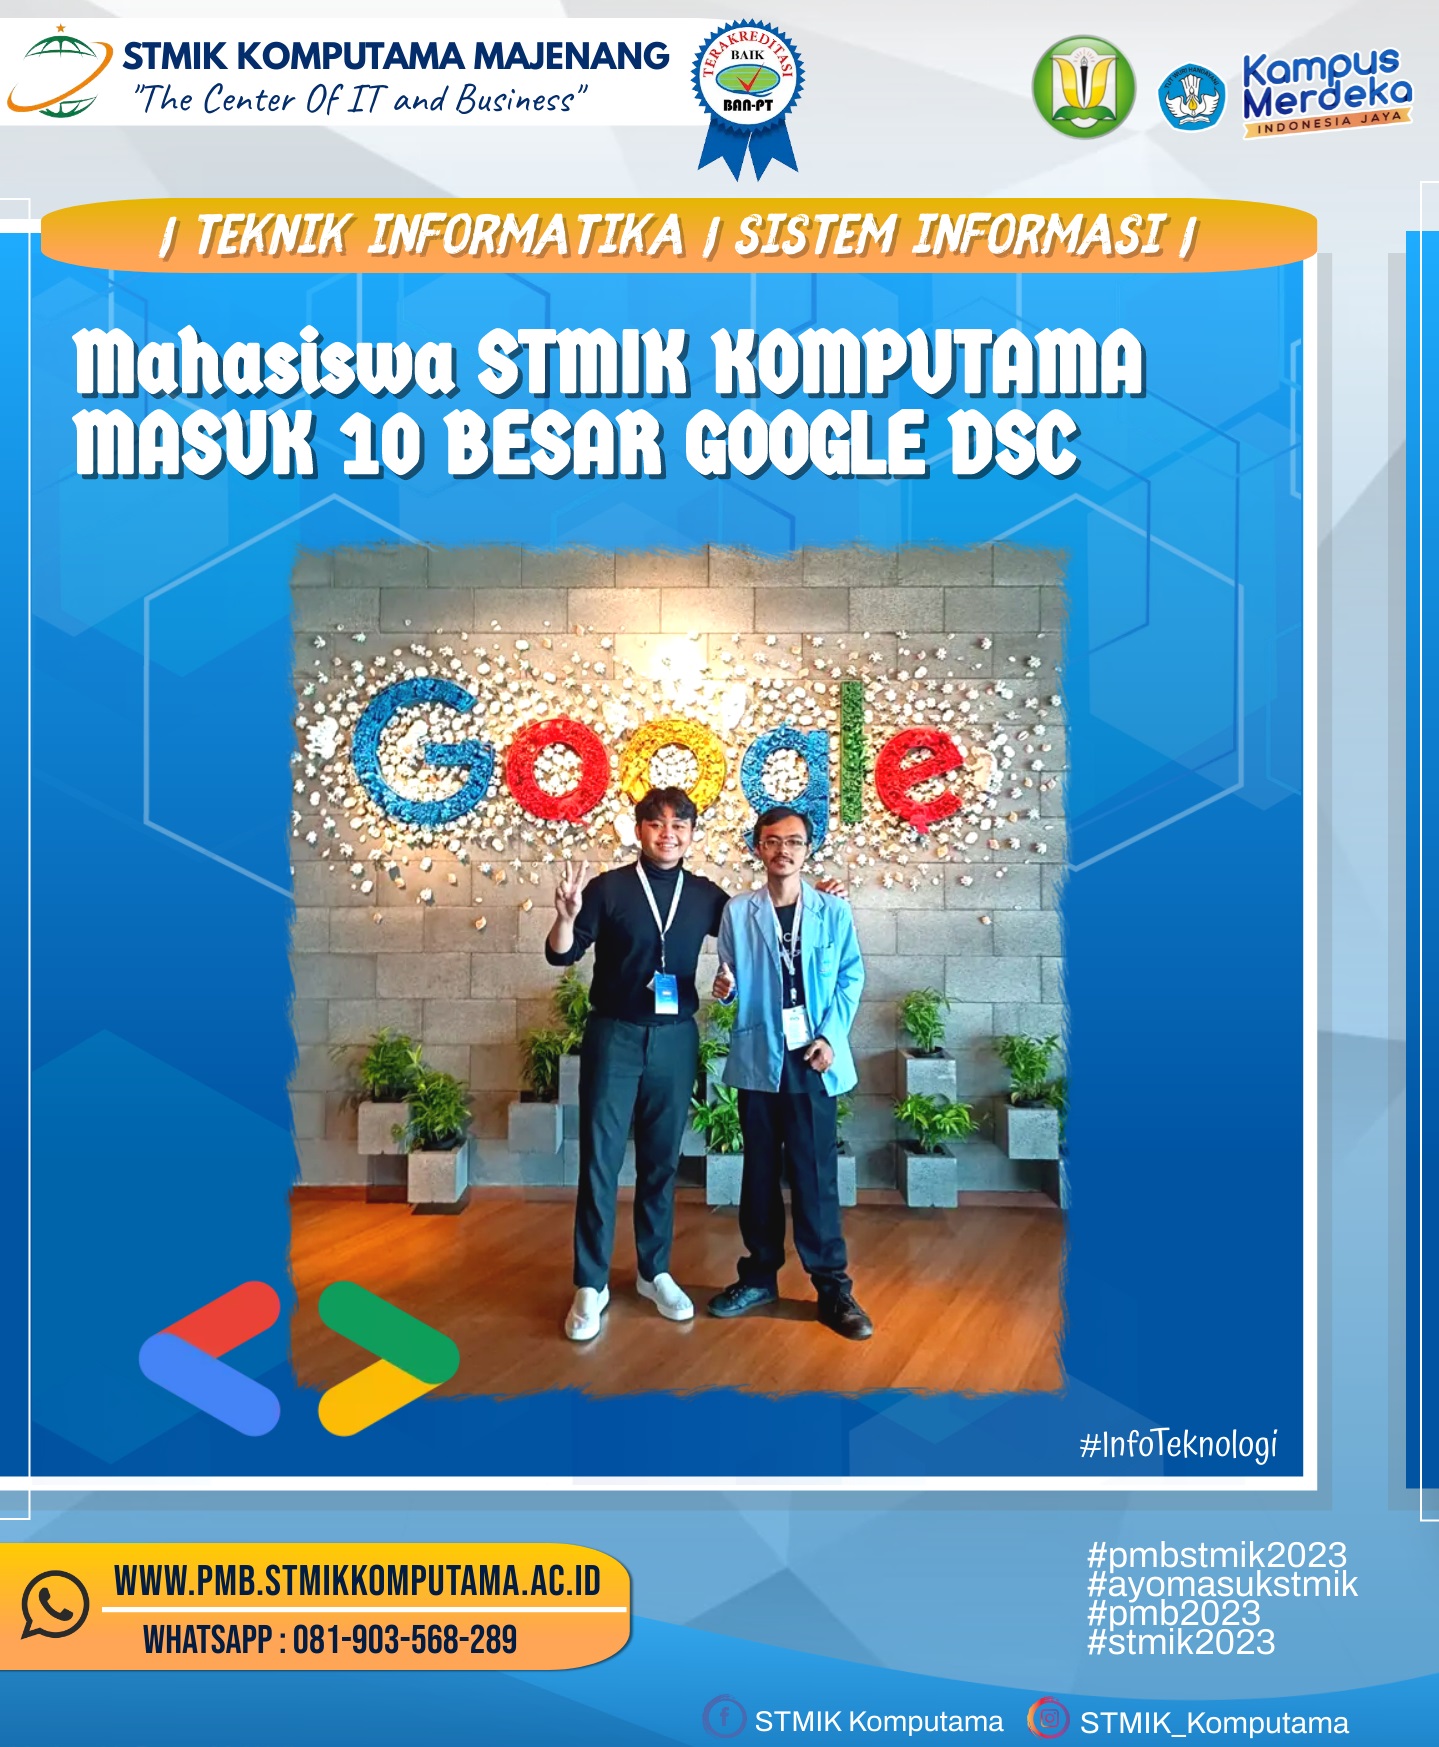 Berkolaborasi dengan UPN Veteran Jakarta, Binus, dan Gunadarma, Mahasiswa STMIK Komputama masuk 10 besar Google DSC